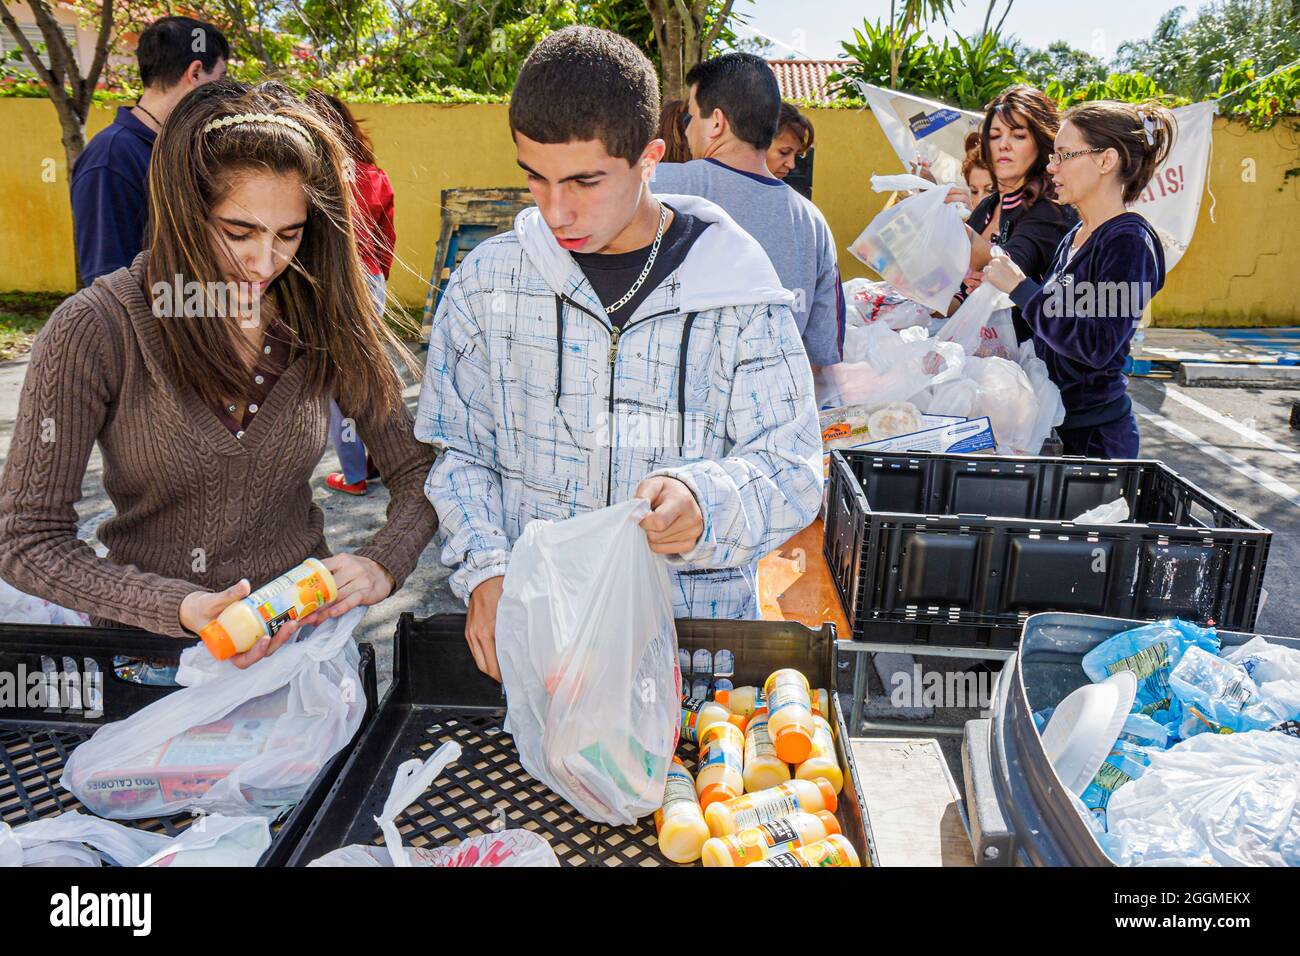 Miami Florida,Thanksgiving turquie libre de nourriture bénévoles bénévoles travaillant en aidant, hispanique fille garçon adolescent adolescents adolescents étudiants préparer Banque D'Images